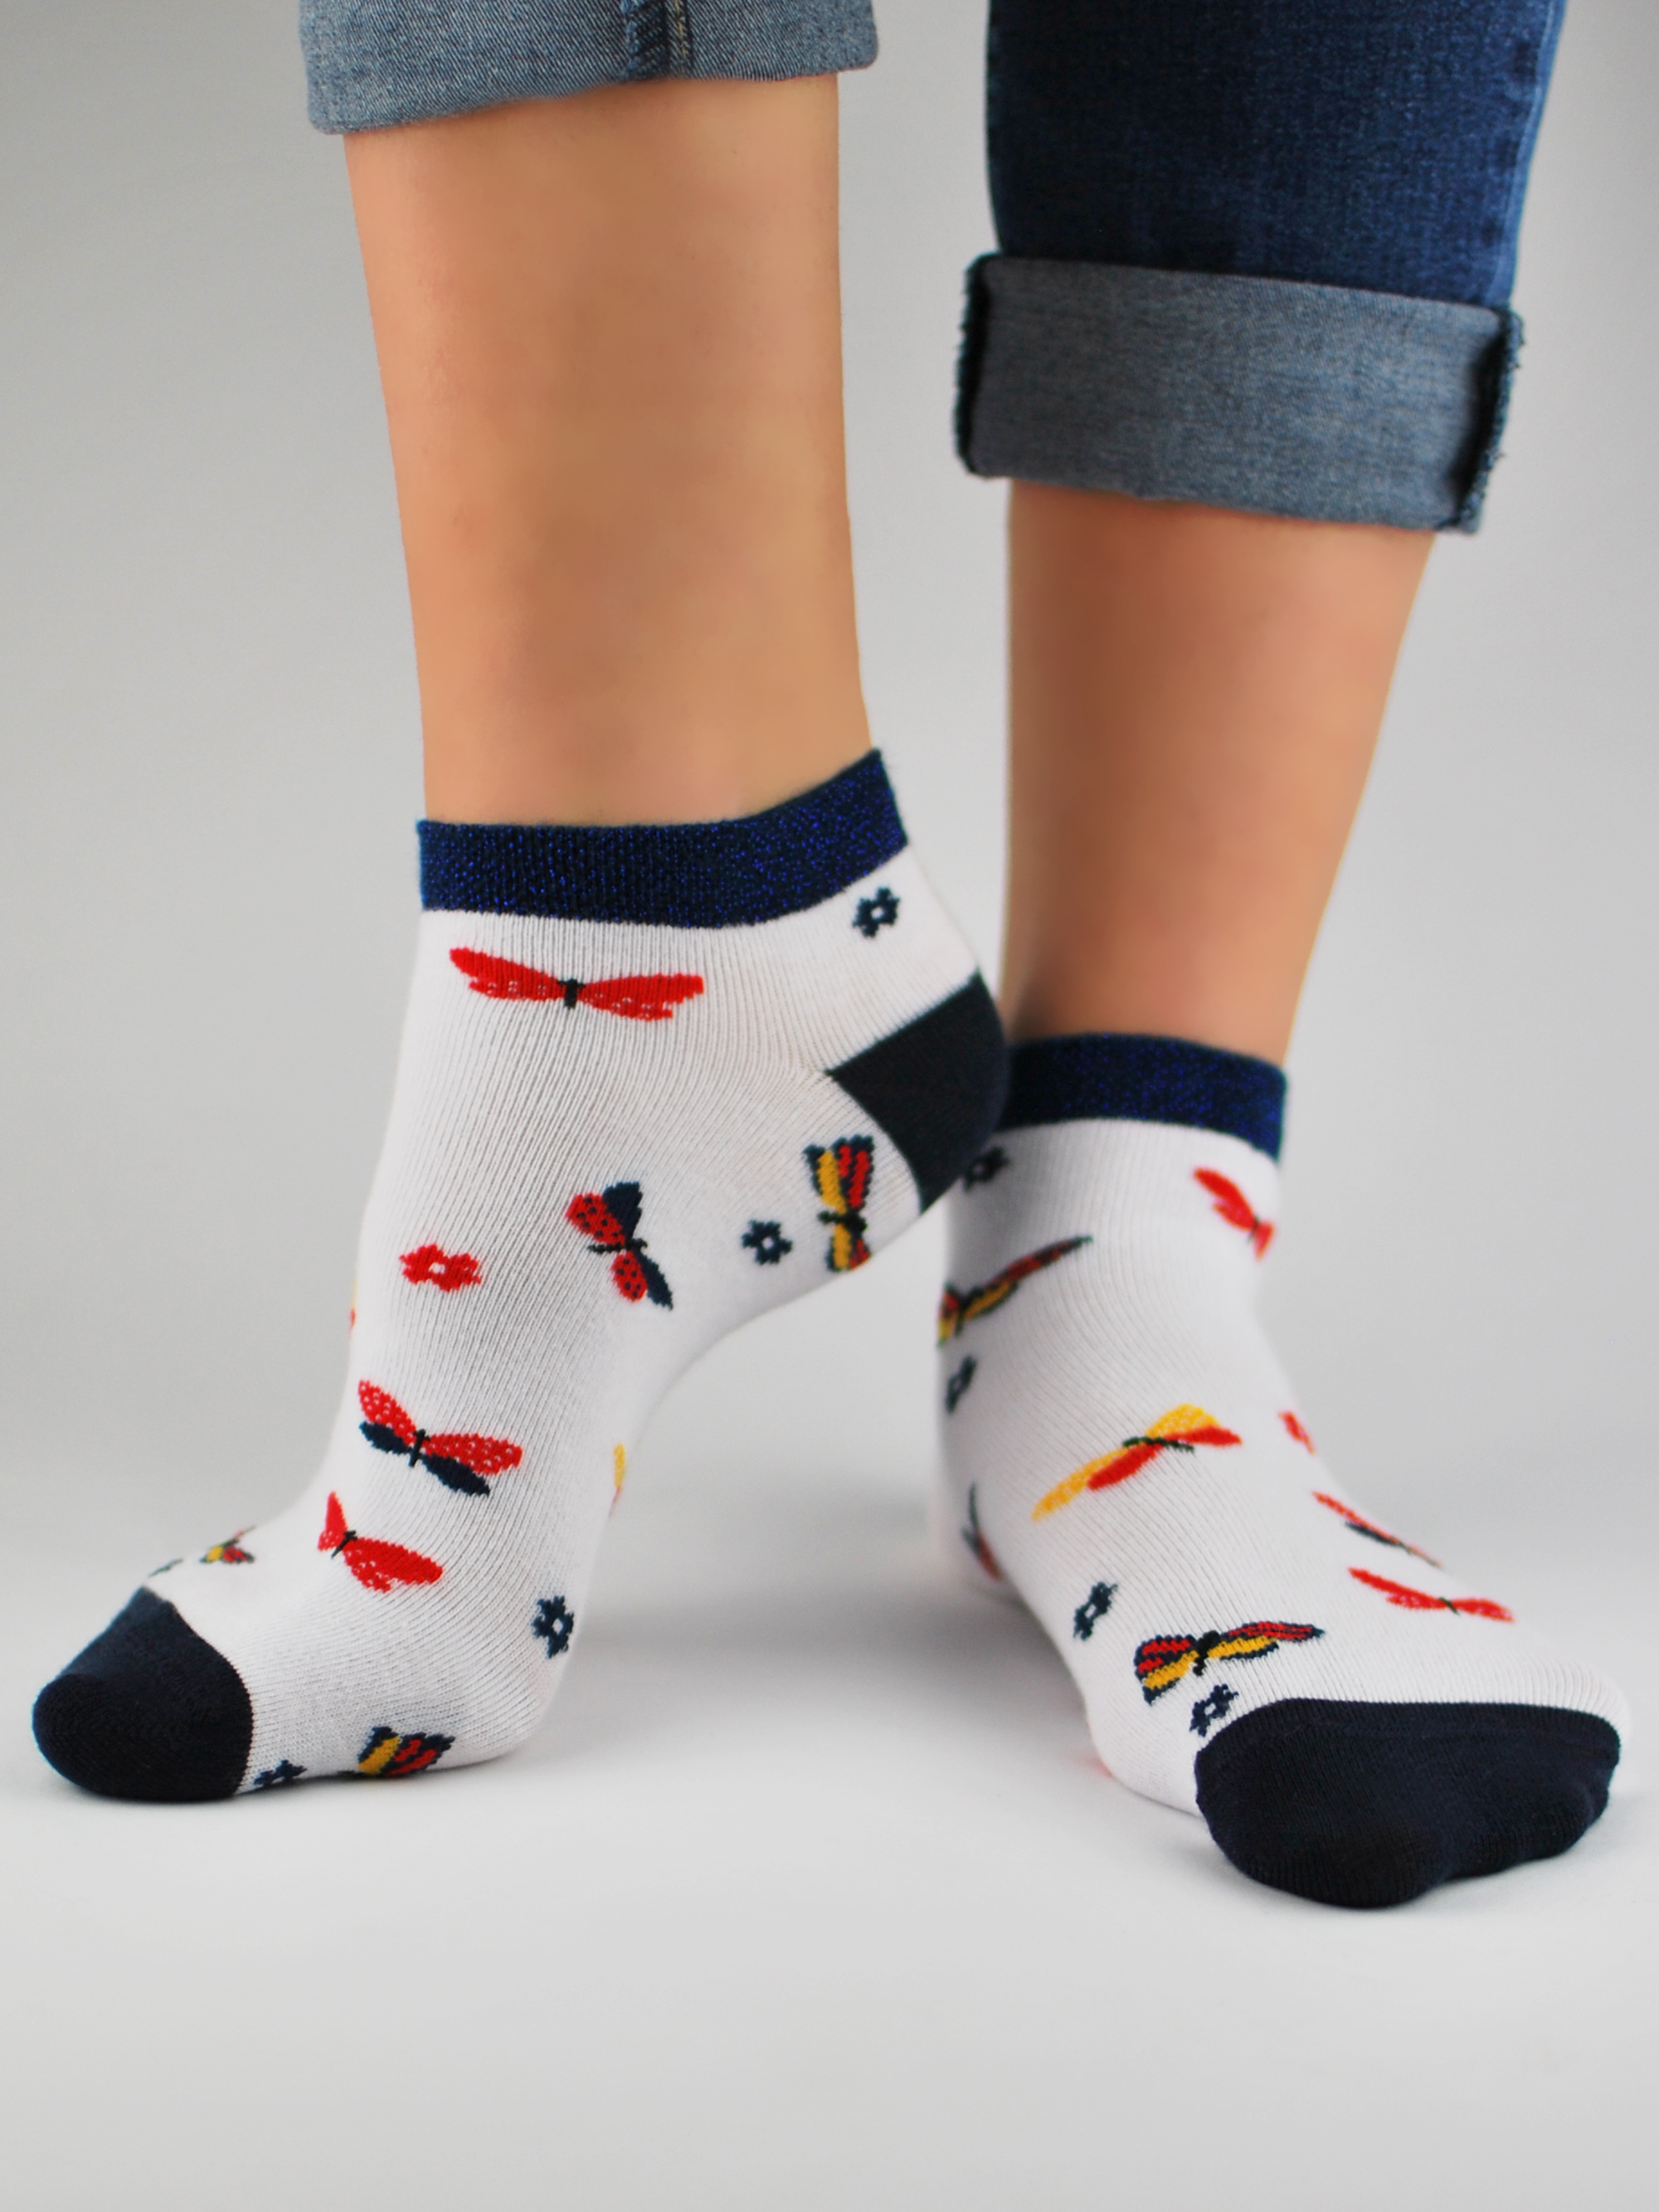 NOVITI Woman's Socks ST023-W-04